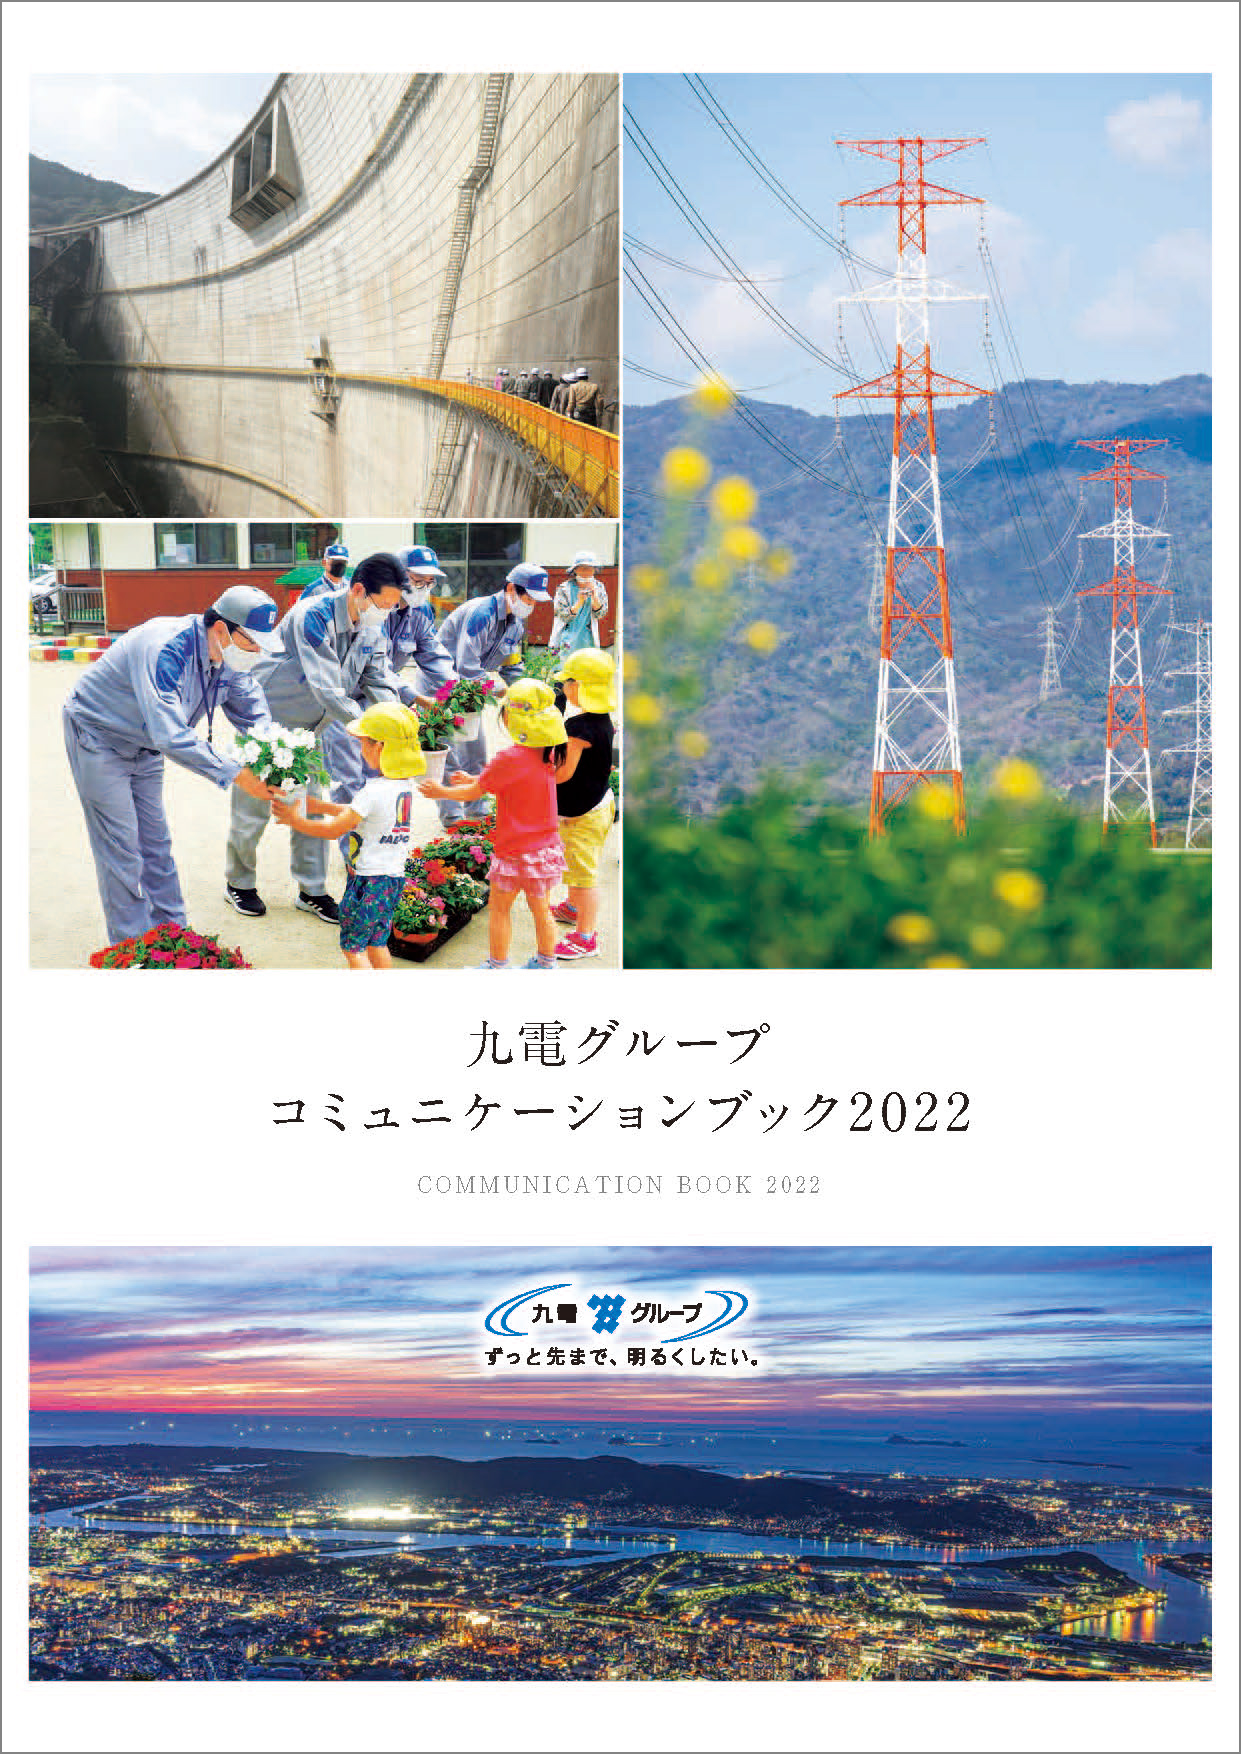 九電グループコミュニケーションブック2022（冊子）のイメージ